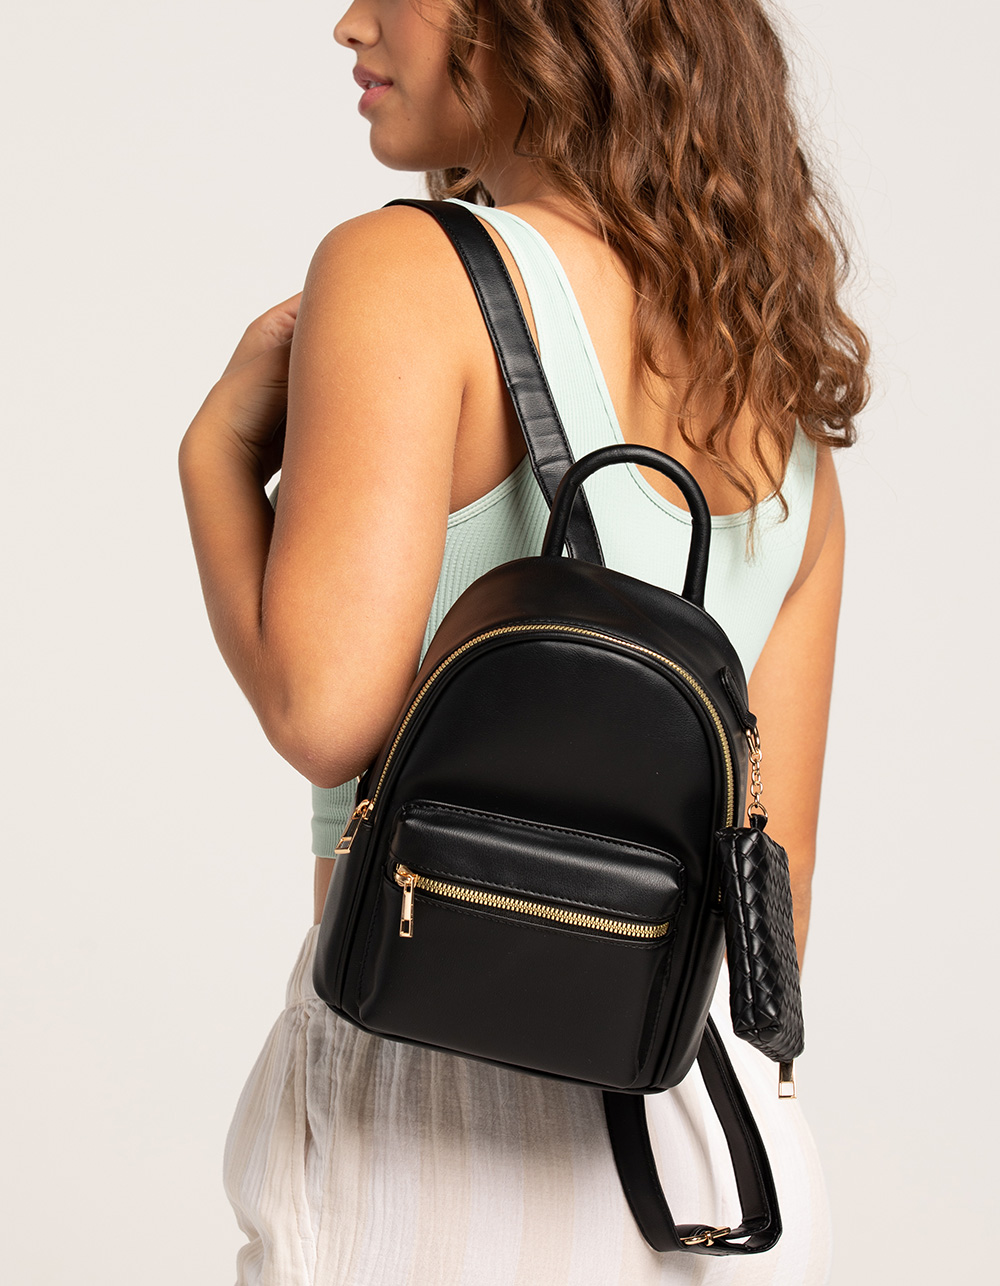 Dickies Mini Backpack, Black, One Size